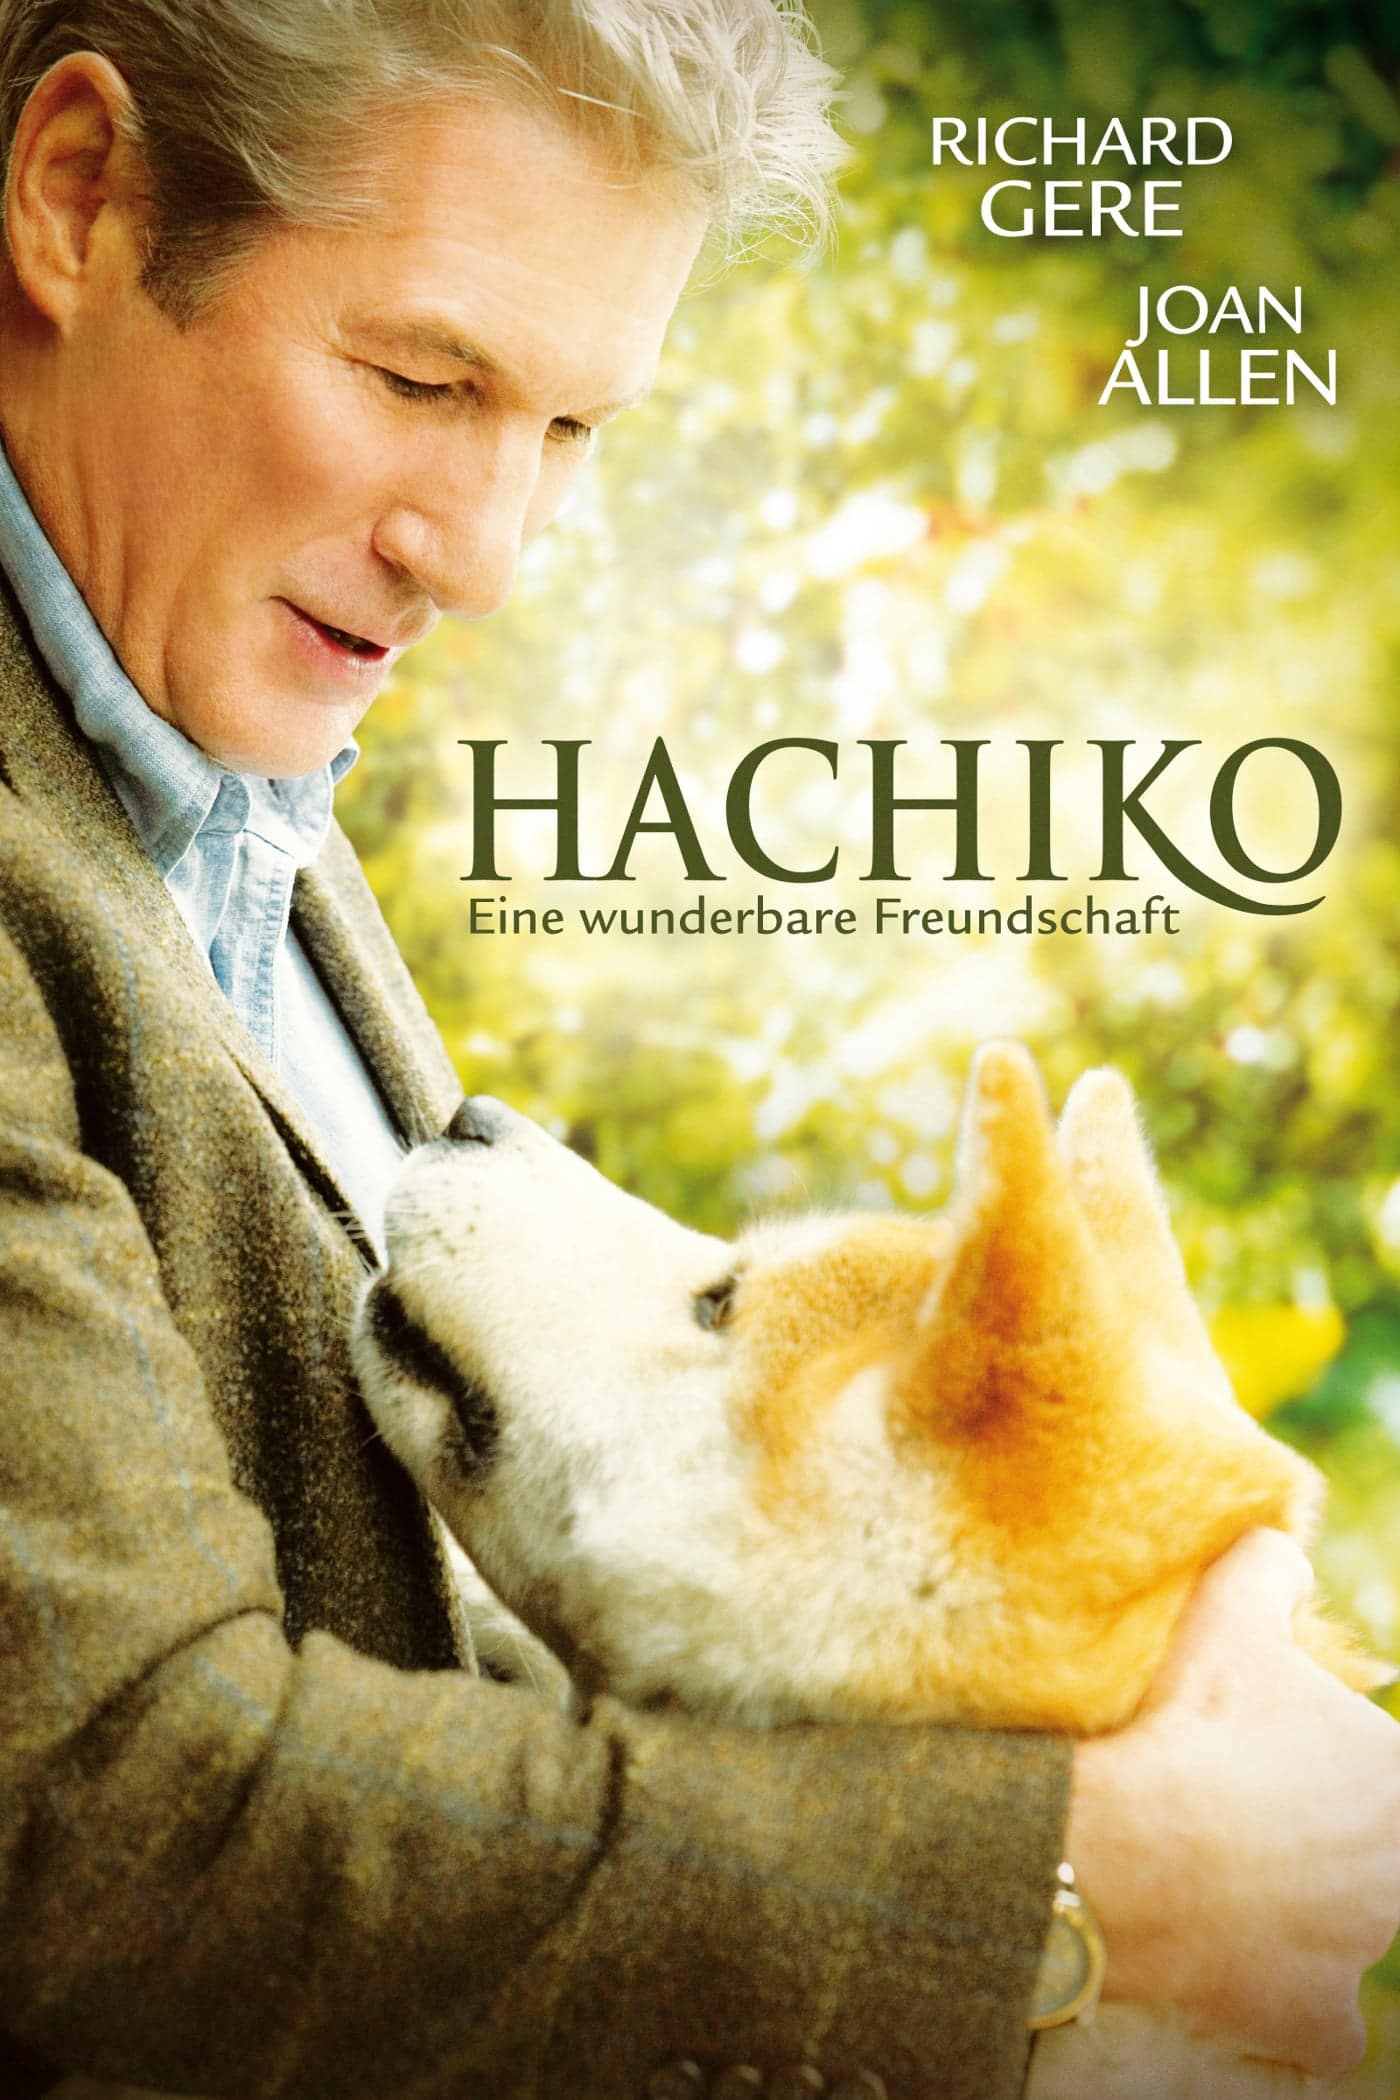 Plakat von "Hachiko - Eine wunderbare Freundschaft"